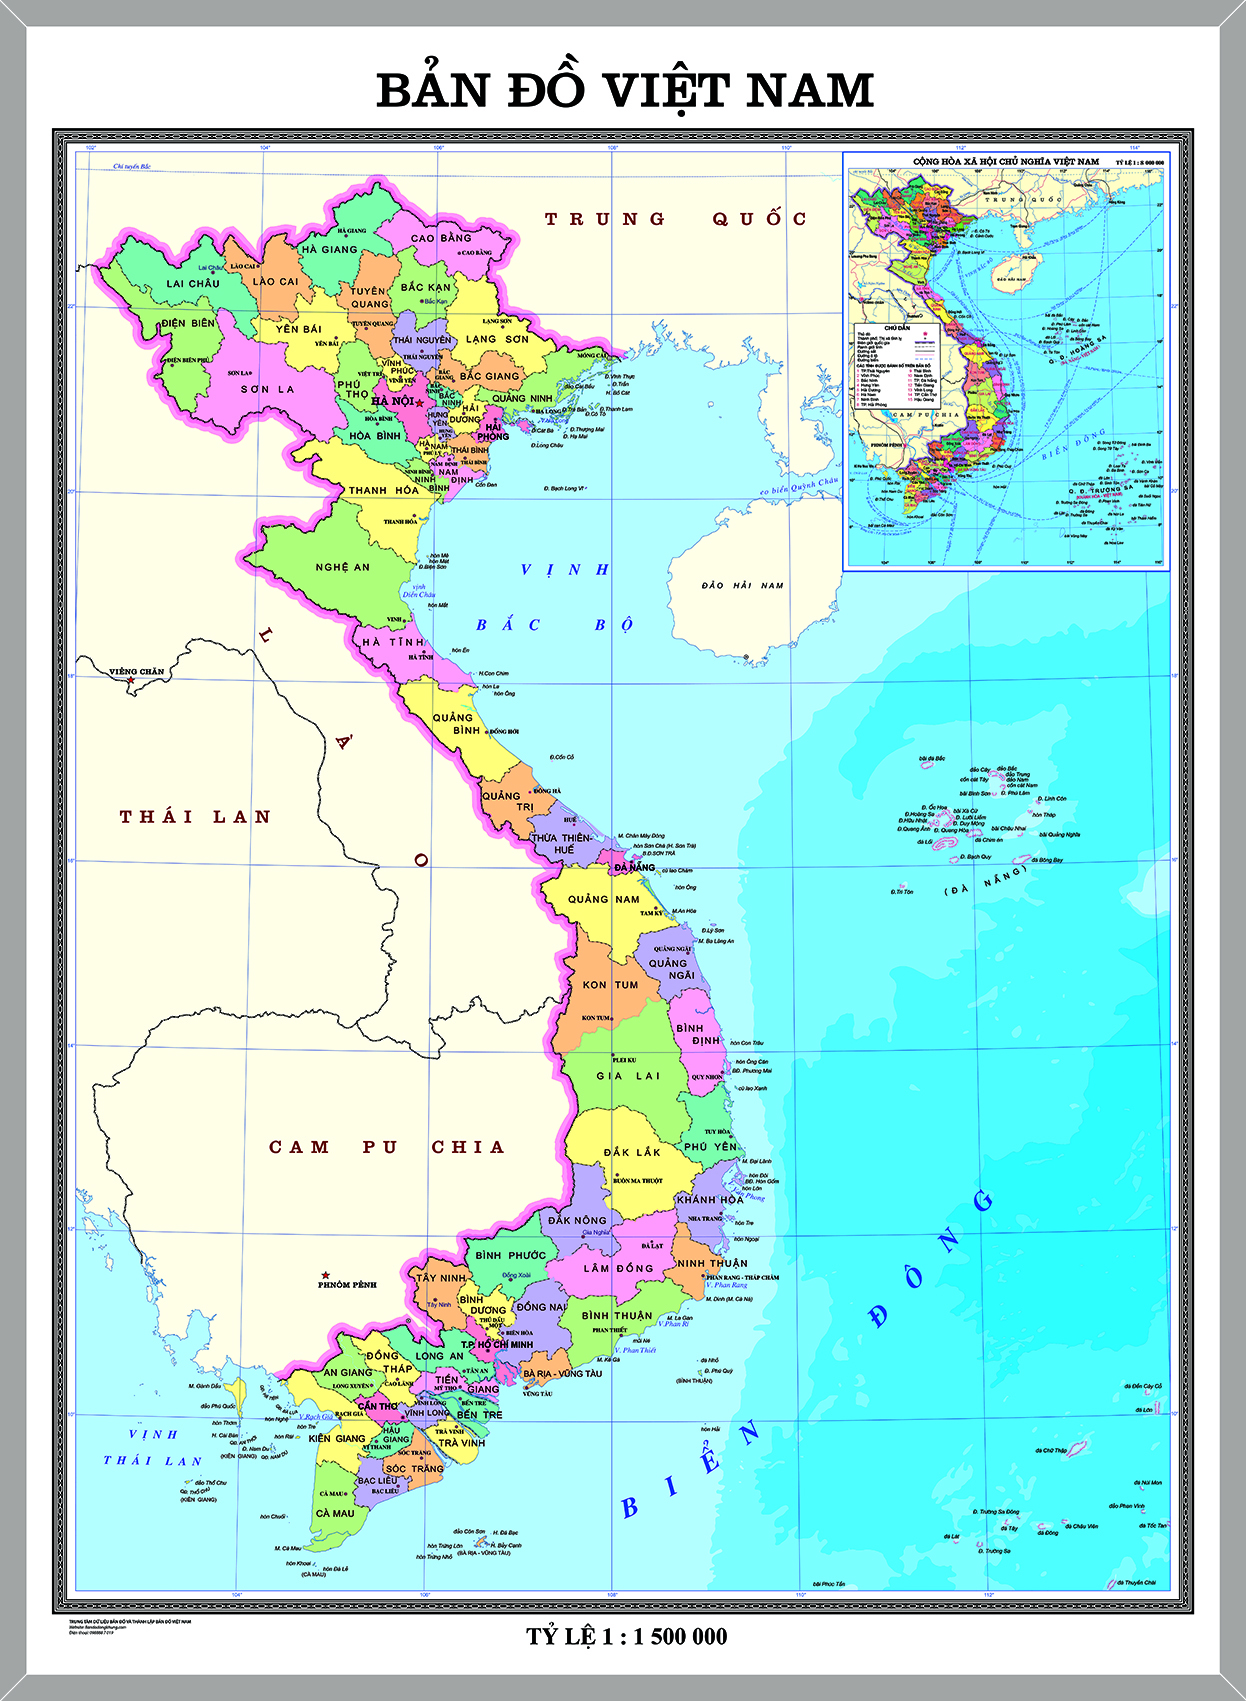 Bộ sưu tập bản đồ địa hình Việt Nam 3D đầy đủ nhất